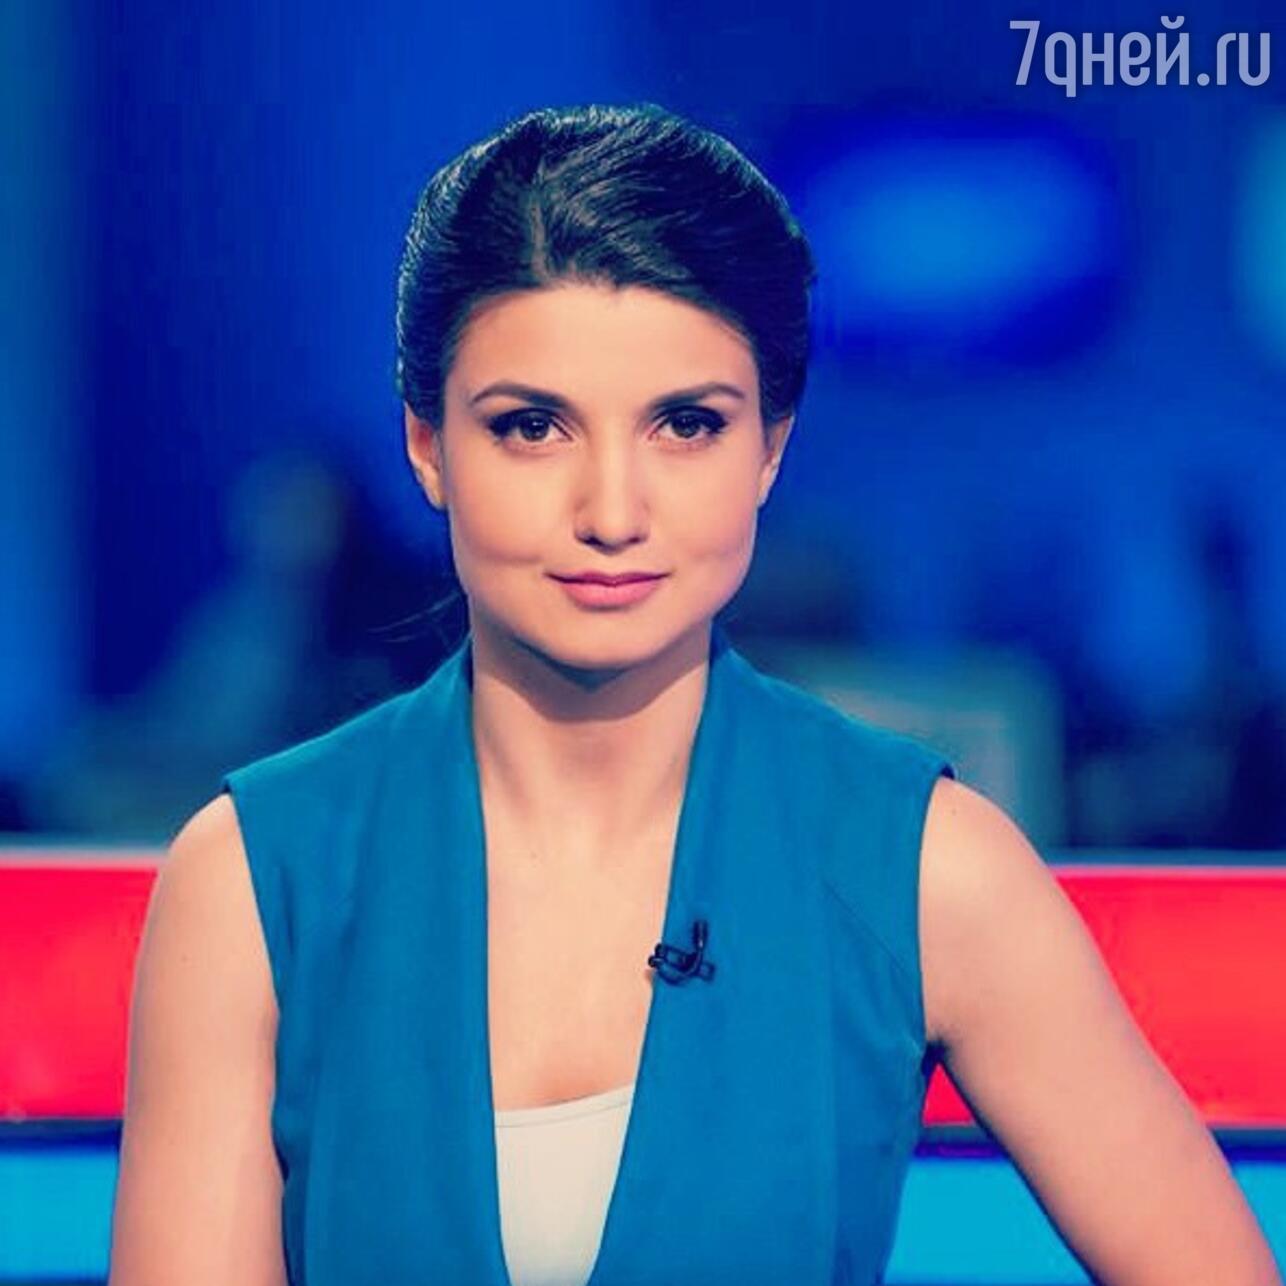 Дана Борисова стала ведущей финансового телеканала РБК